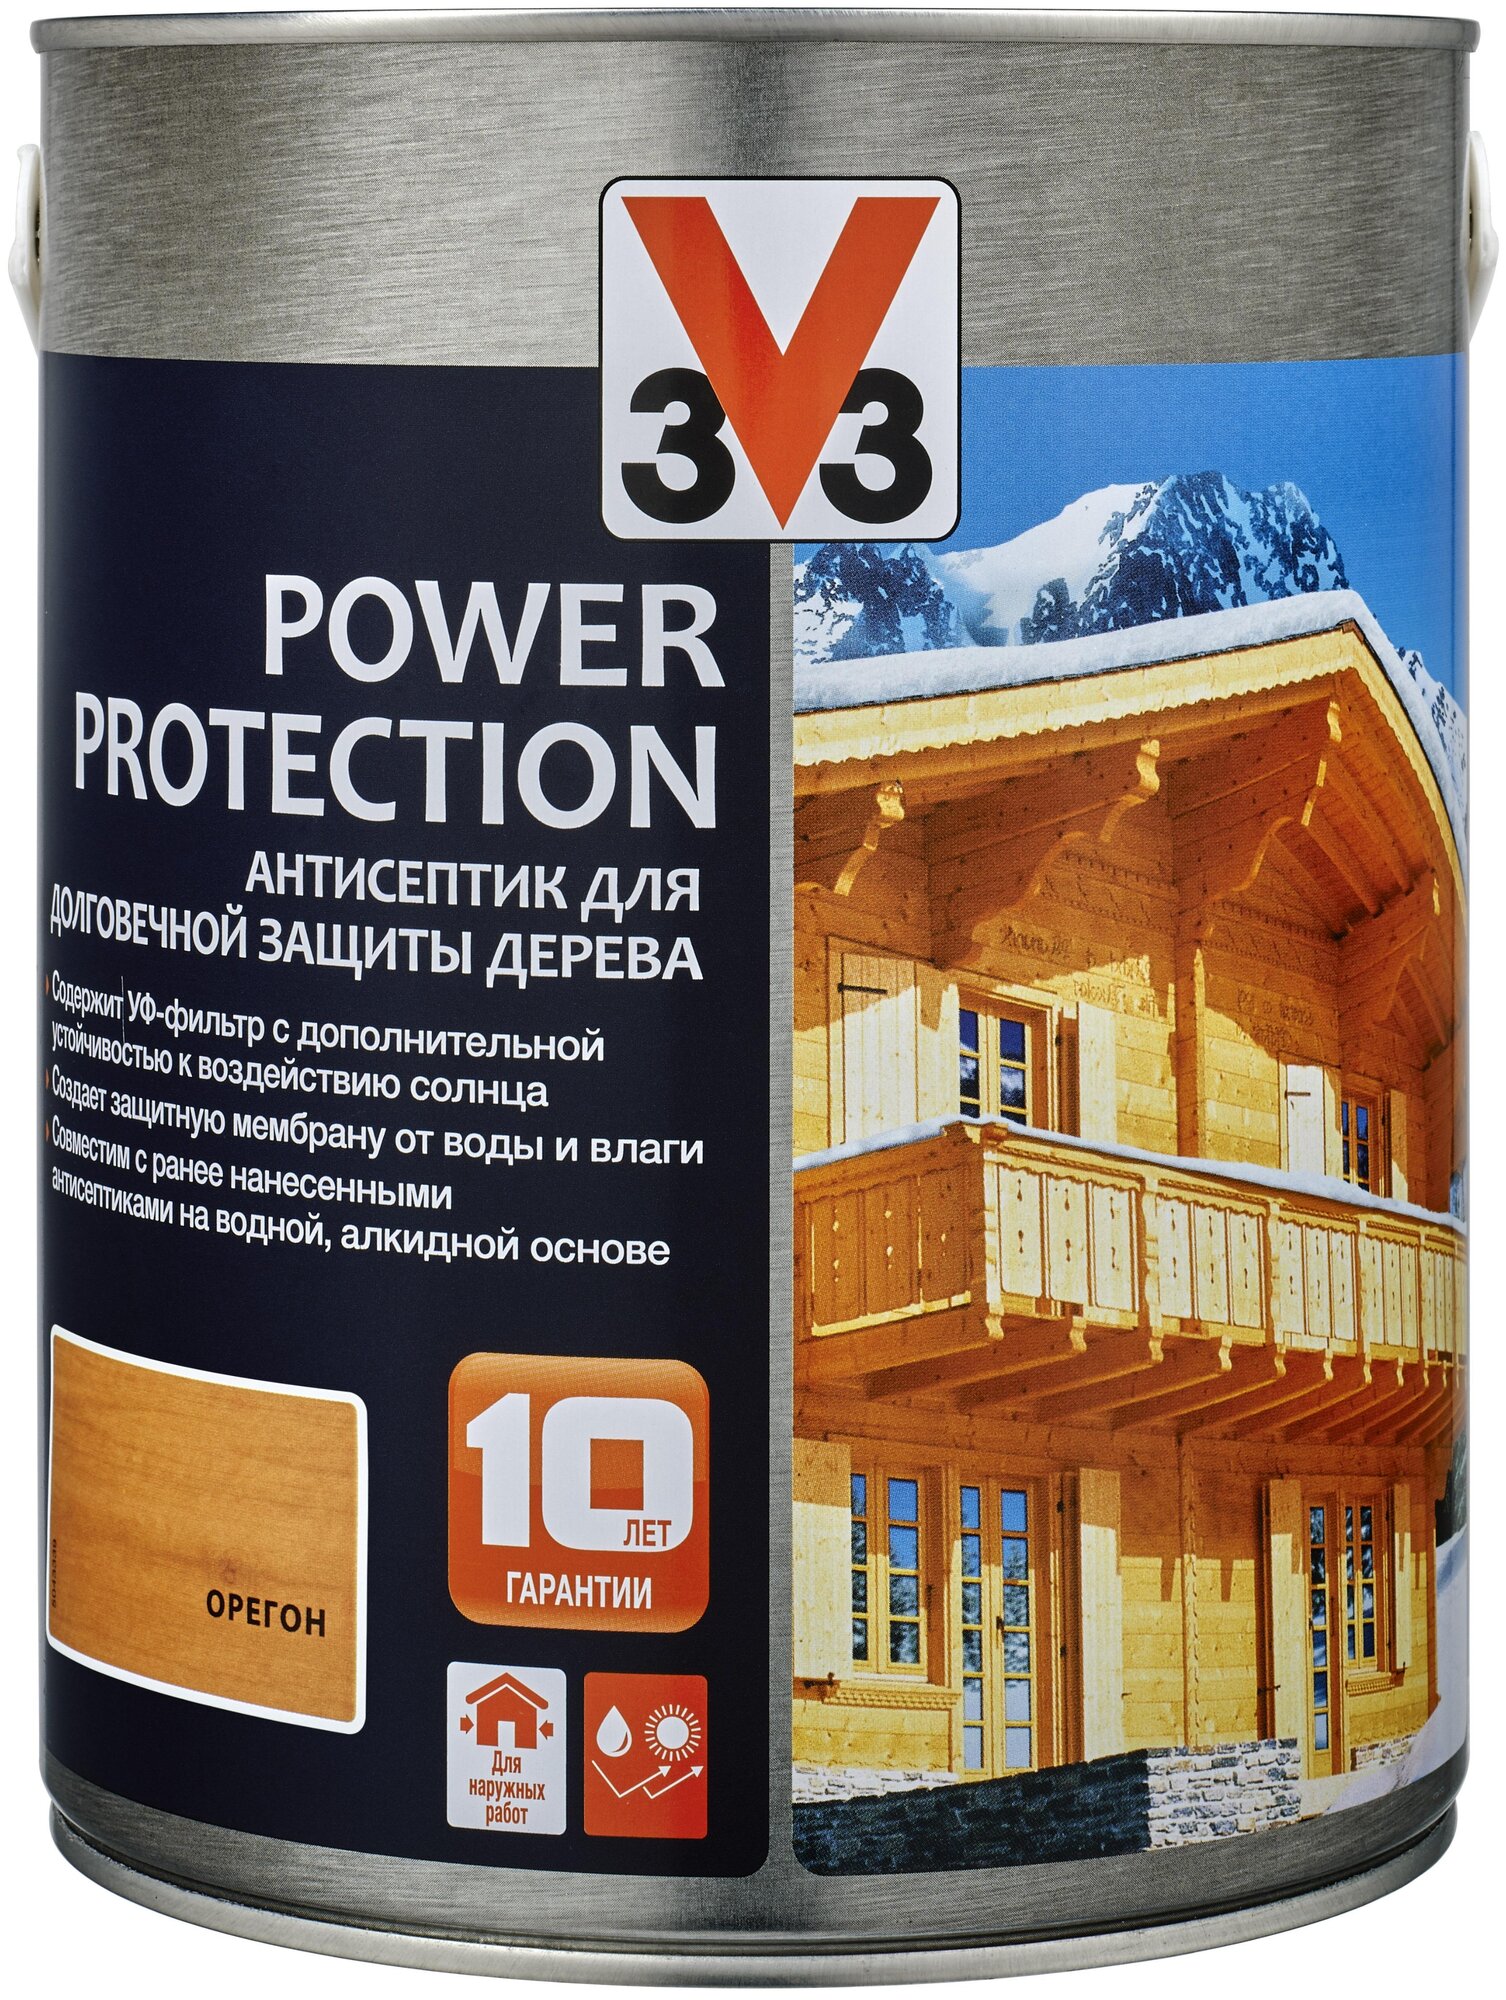 Пропитка V33 антисептик Power Protection